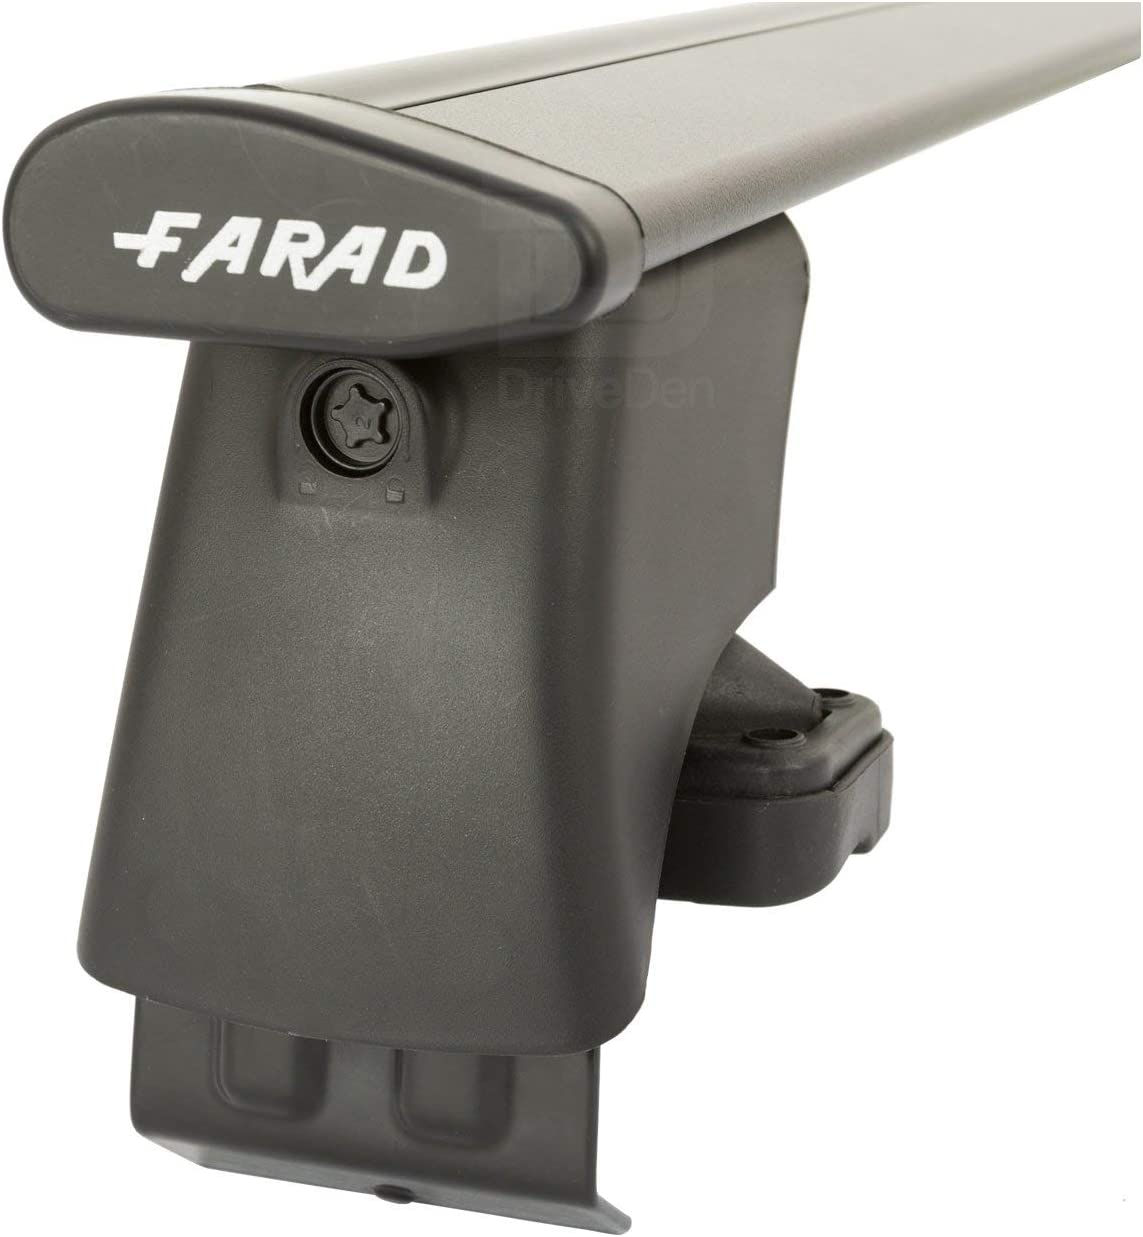 FARAD-Kit H2 per barre portatutto - Renault Scenic 2009-2016 (senza corrimano)